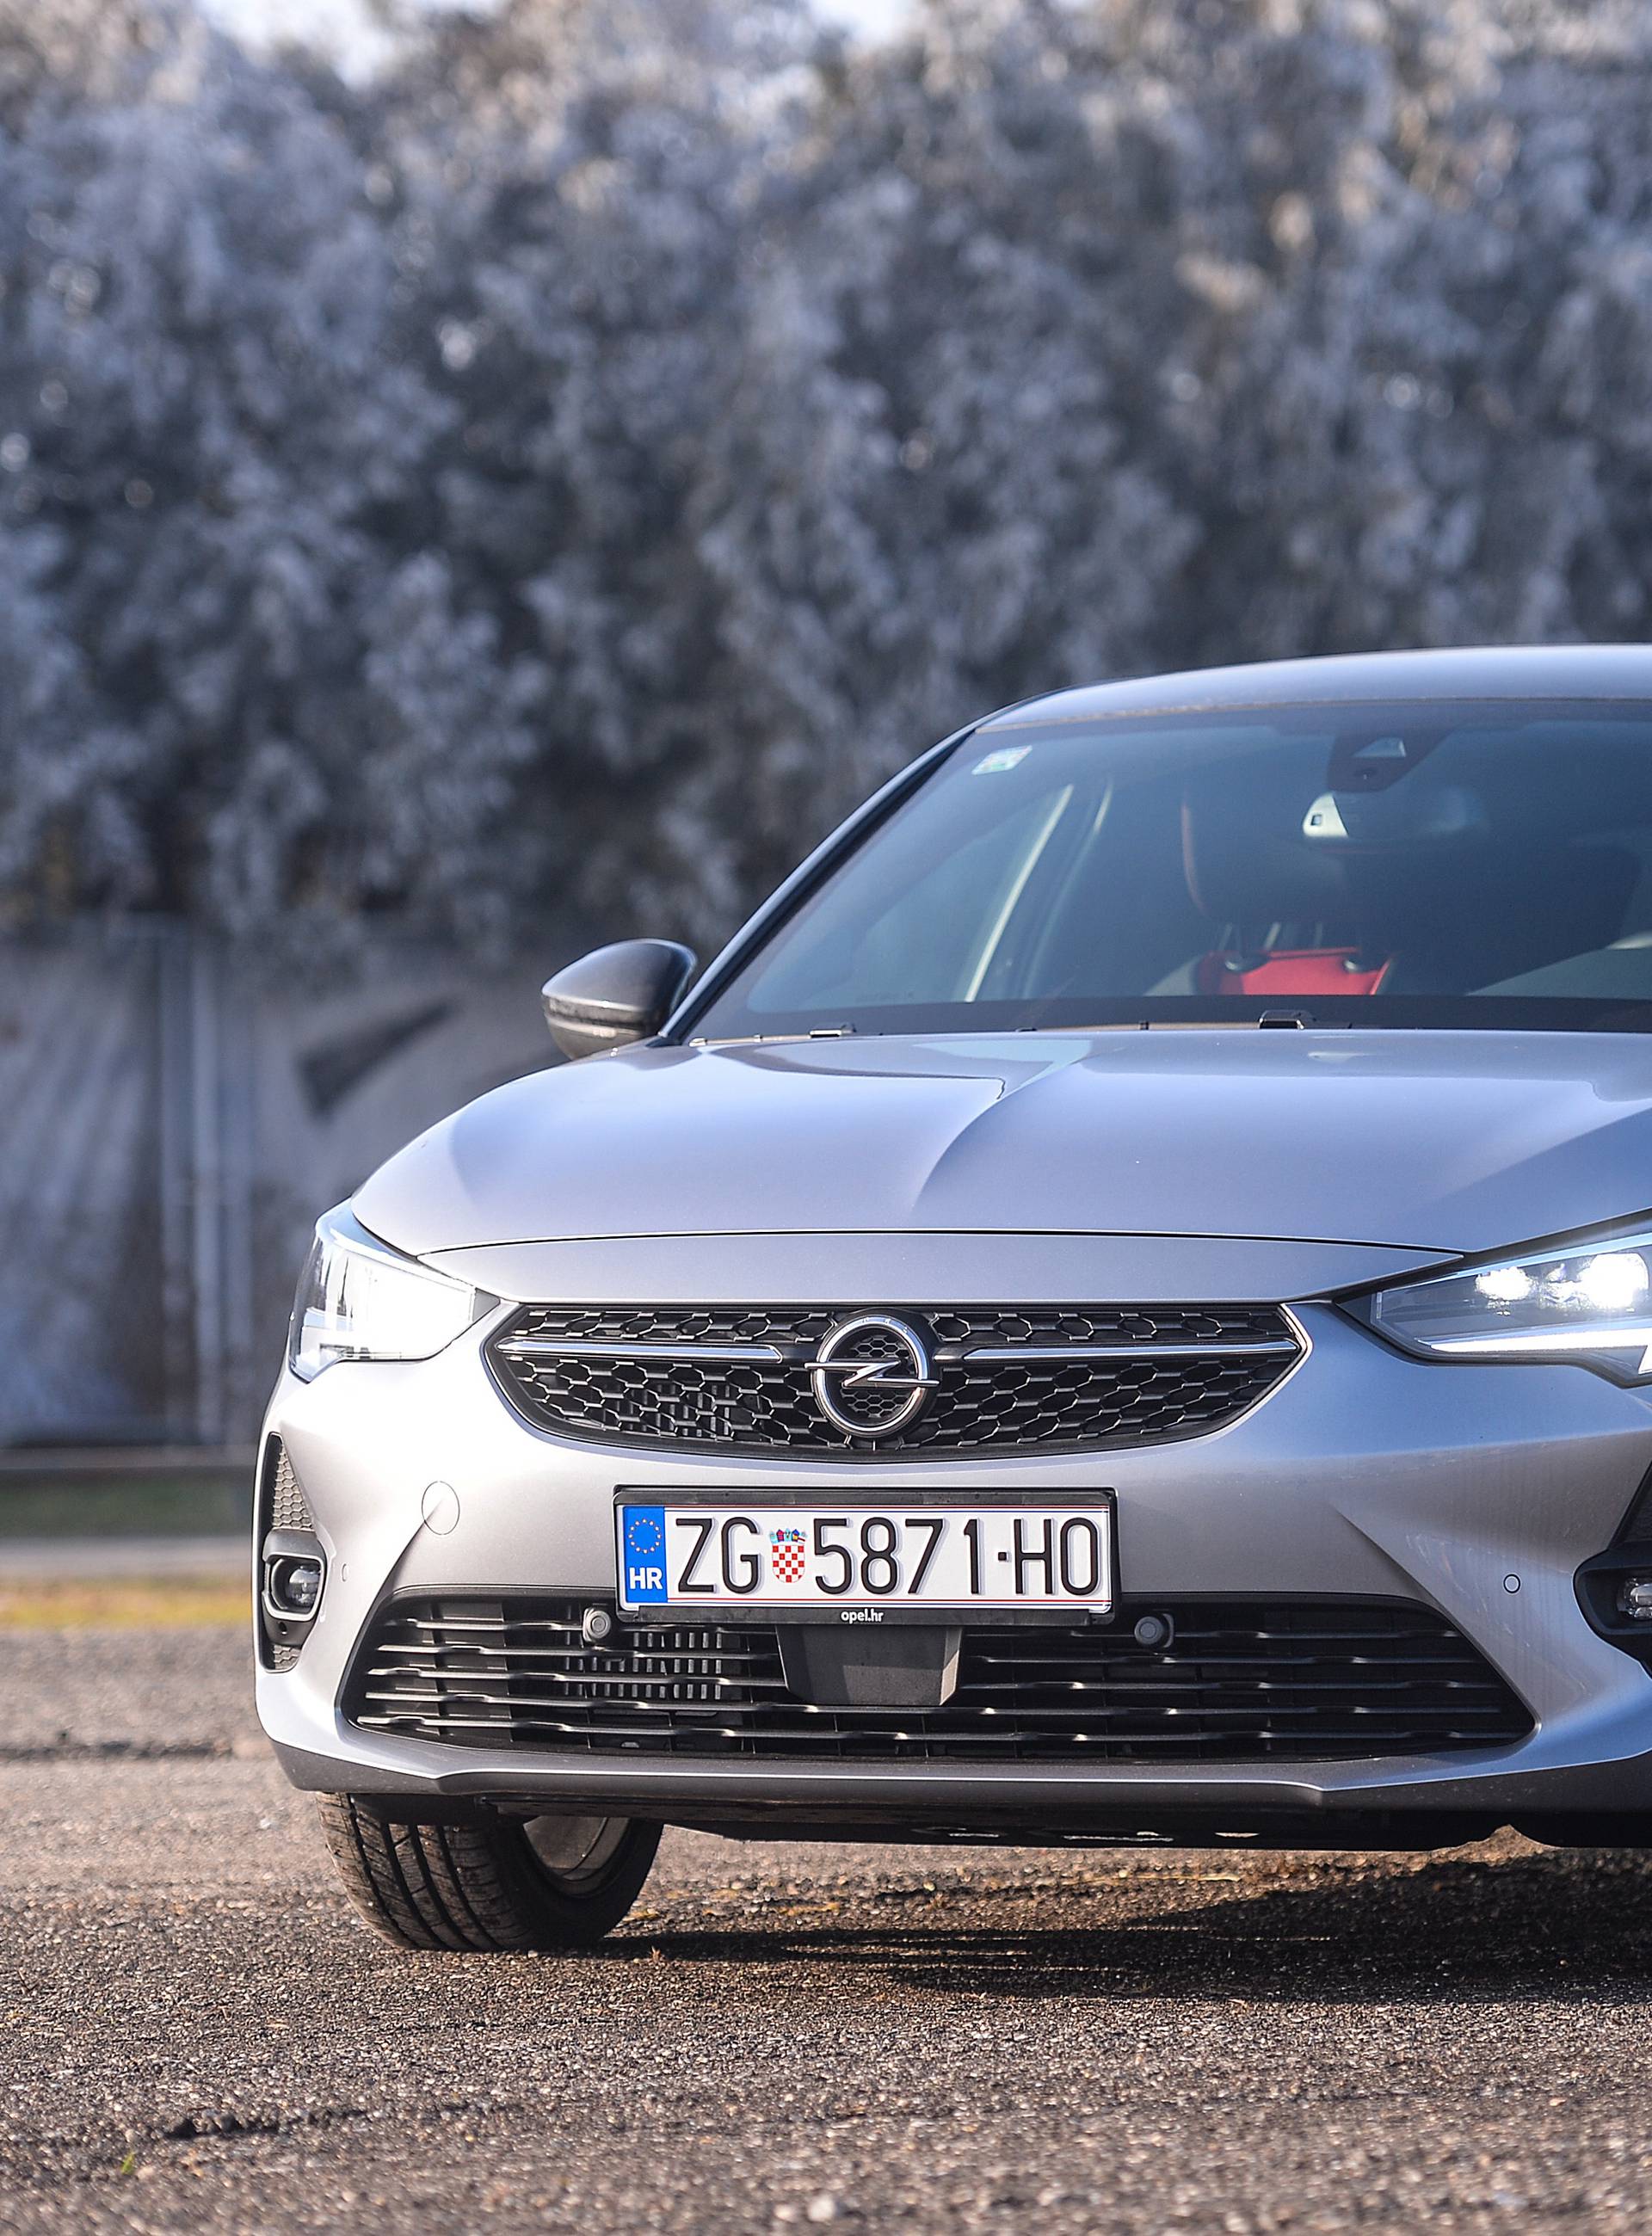 Testirali smo novu Corsu, još jedan drukčiji Opel novog doba